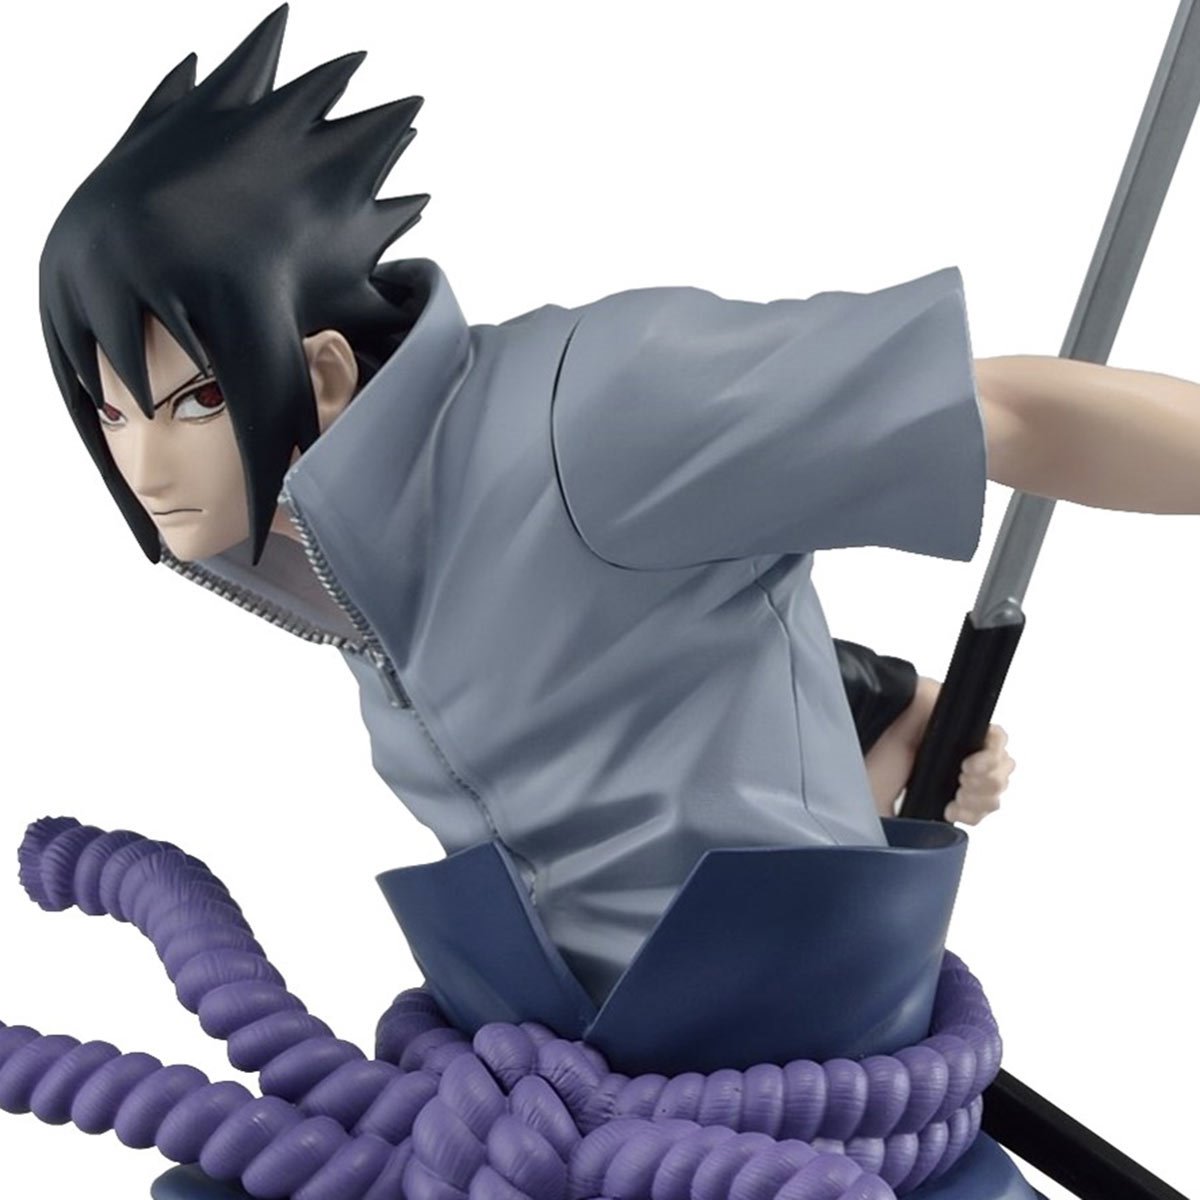  Uchiha Sasuke Fight Character Model Classic Anime